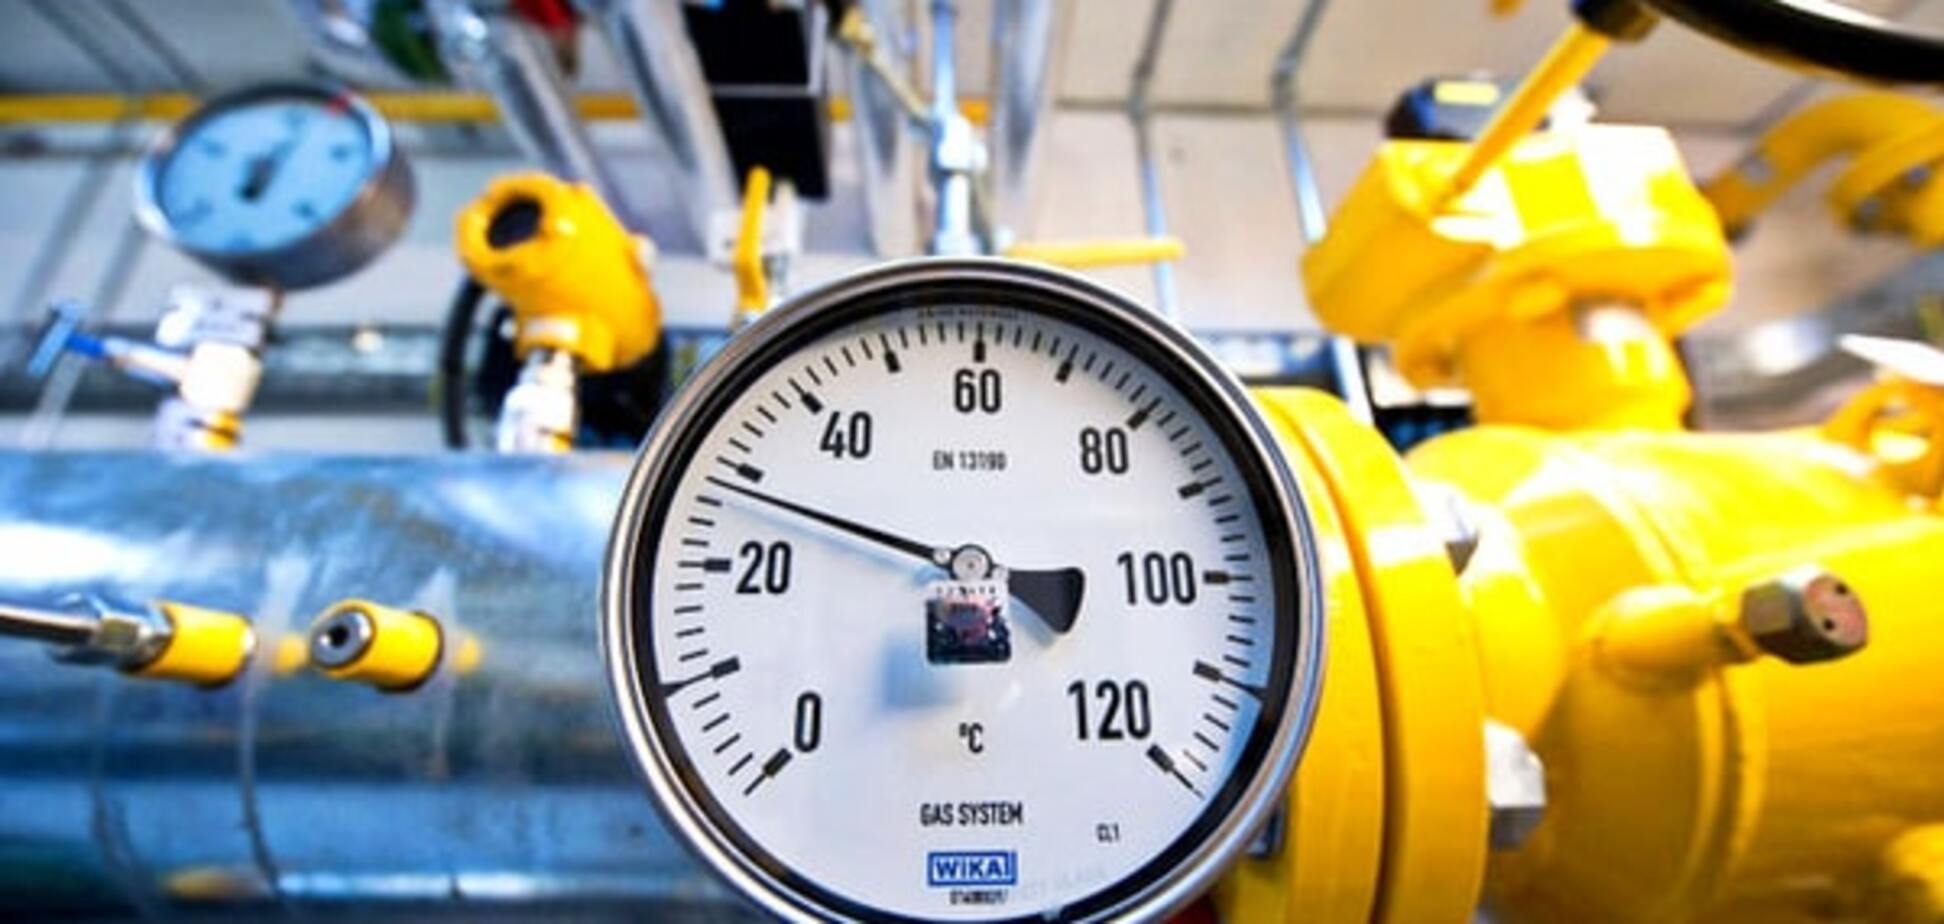 Експерт спрогнозував вартість російського газу для України нижче $ 100 